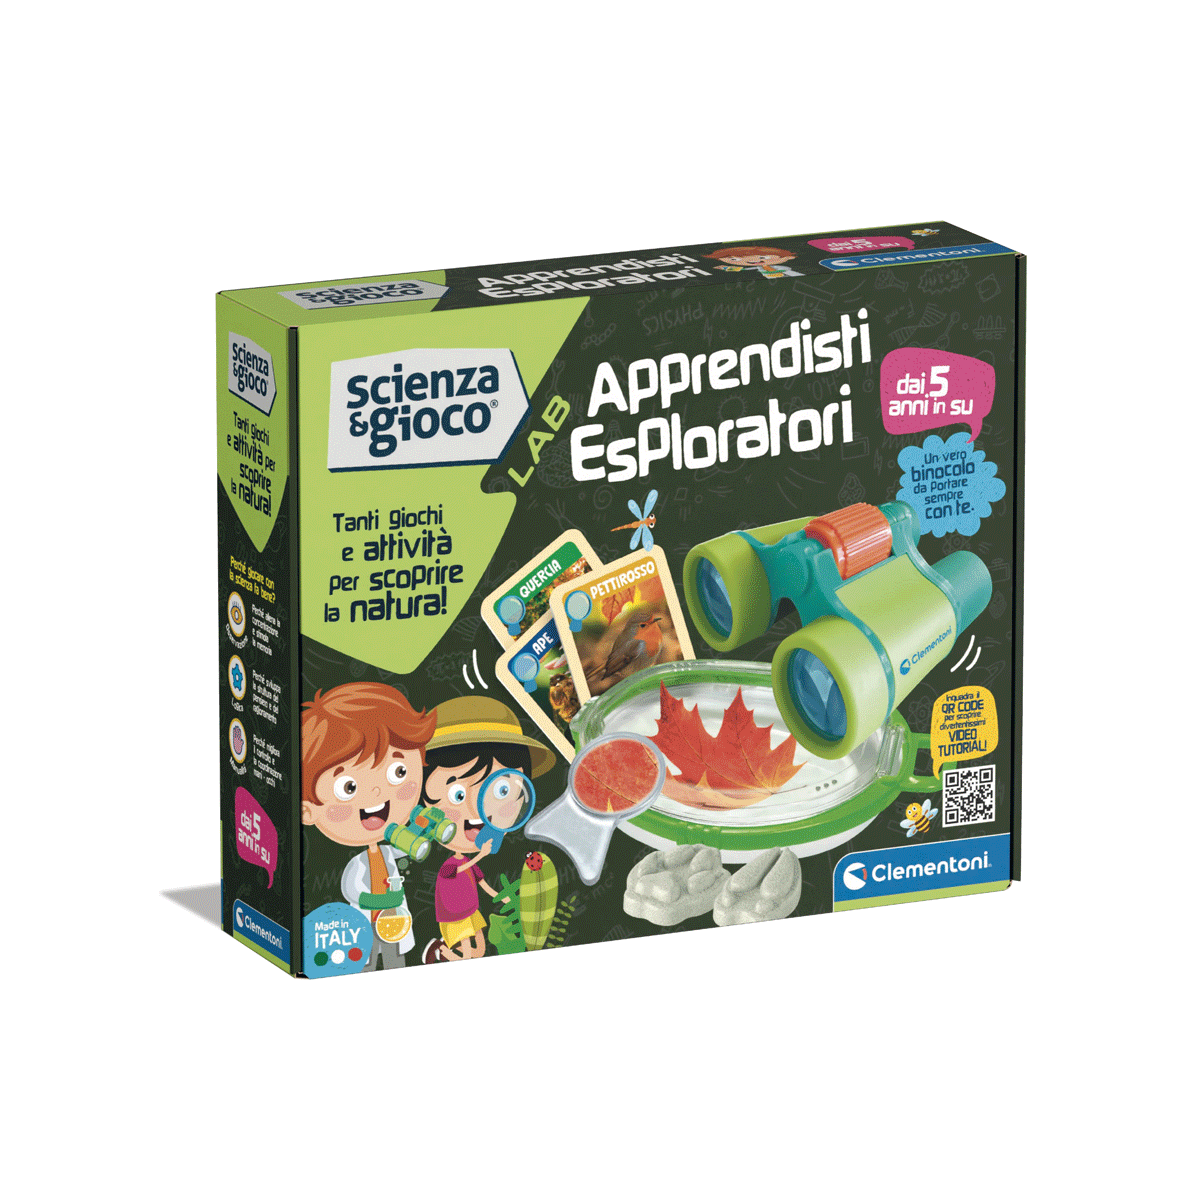 Clementoni - scienza e gioco lab - apprendisti esploratori - Scienza e Gioco